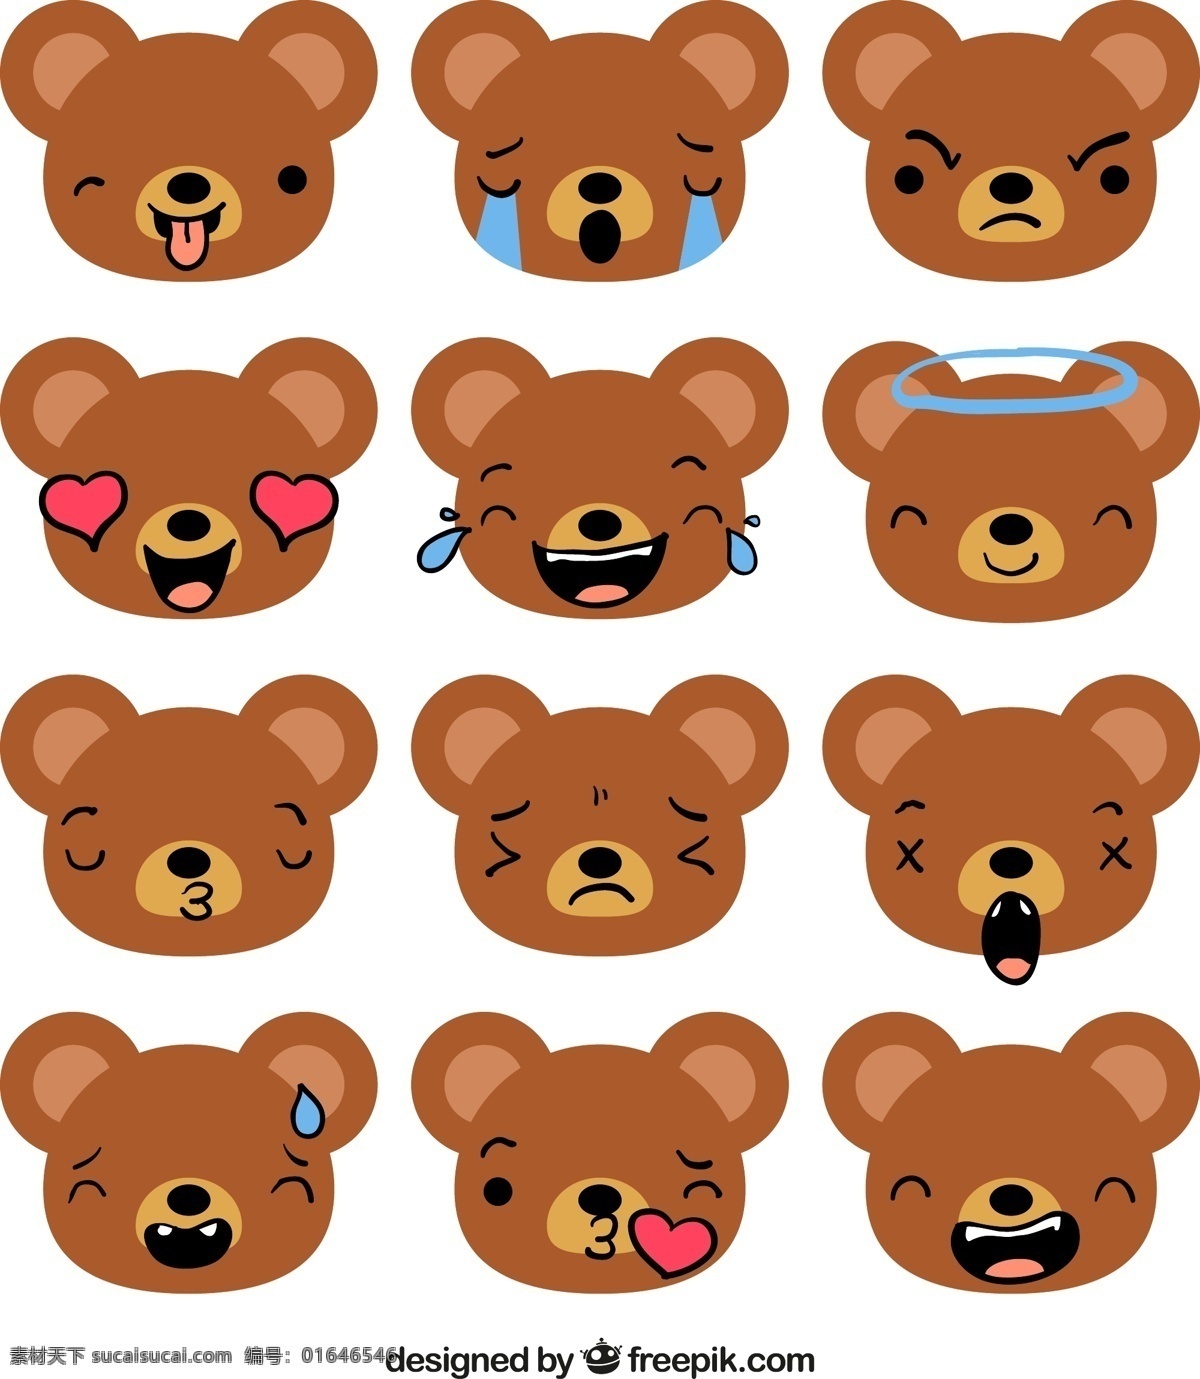 组 棕色 小 熊 表情 包 可爱 卡通 卡哇伊 矢量素材 动物 小动物 创意设计 简约 创意 元素 生物元素 动物元素